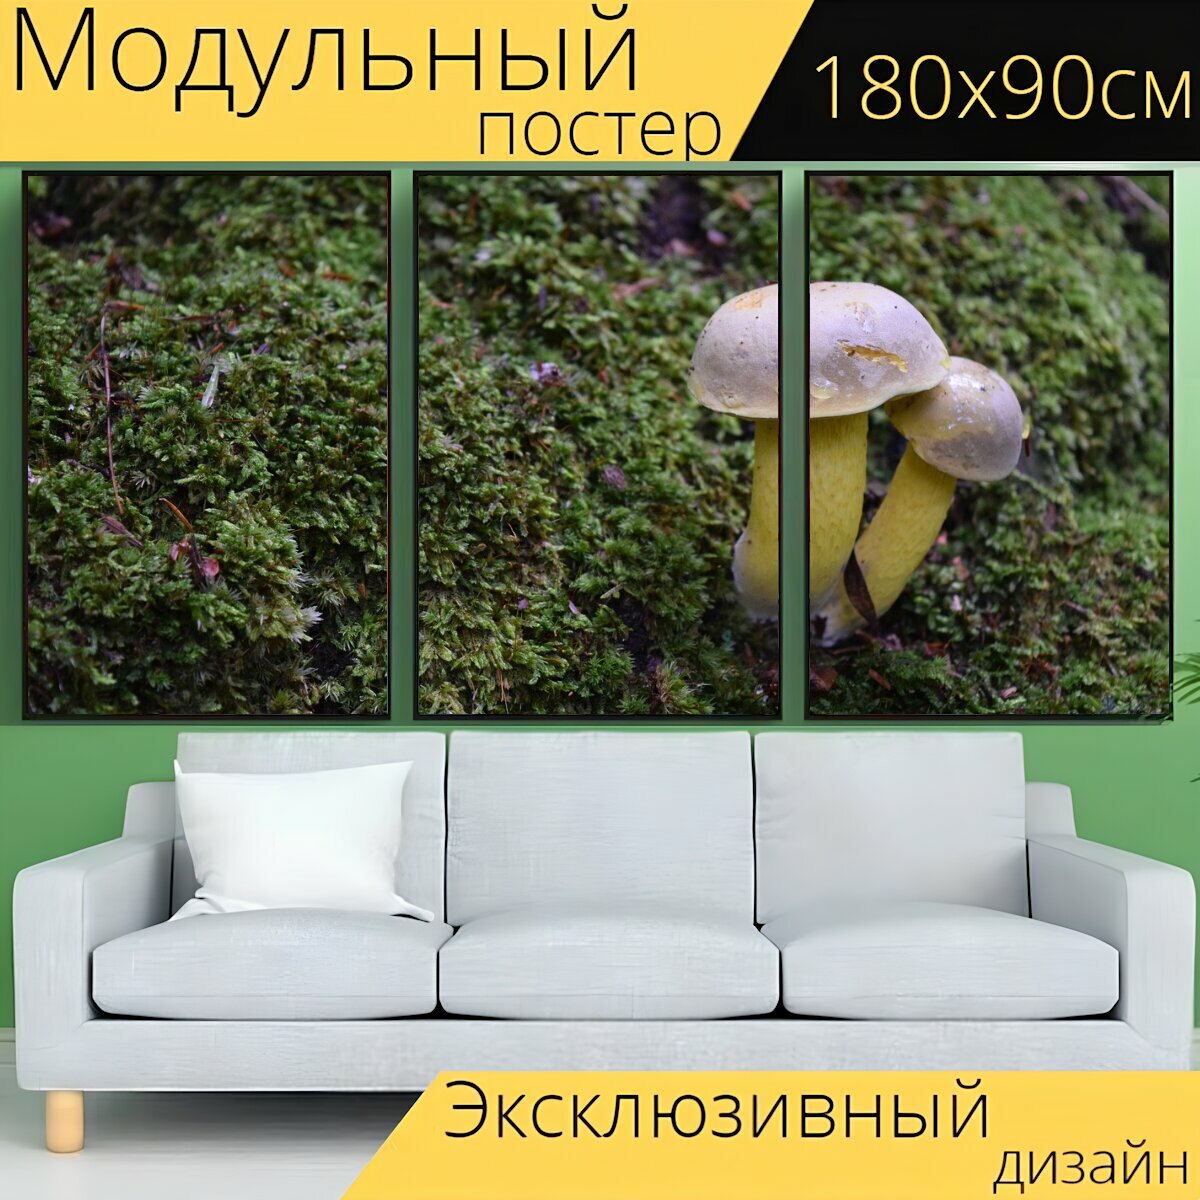 Модульный постер "Гриб, грибы, грибок" 180 x 90 см. для интерьера